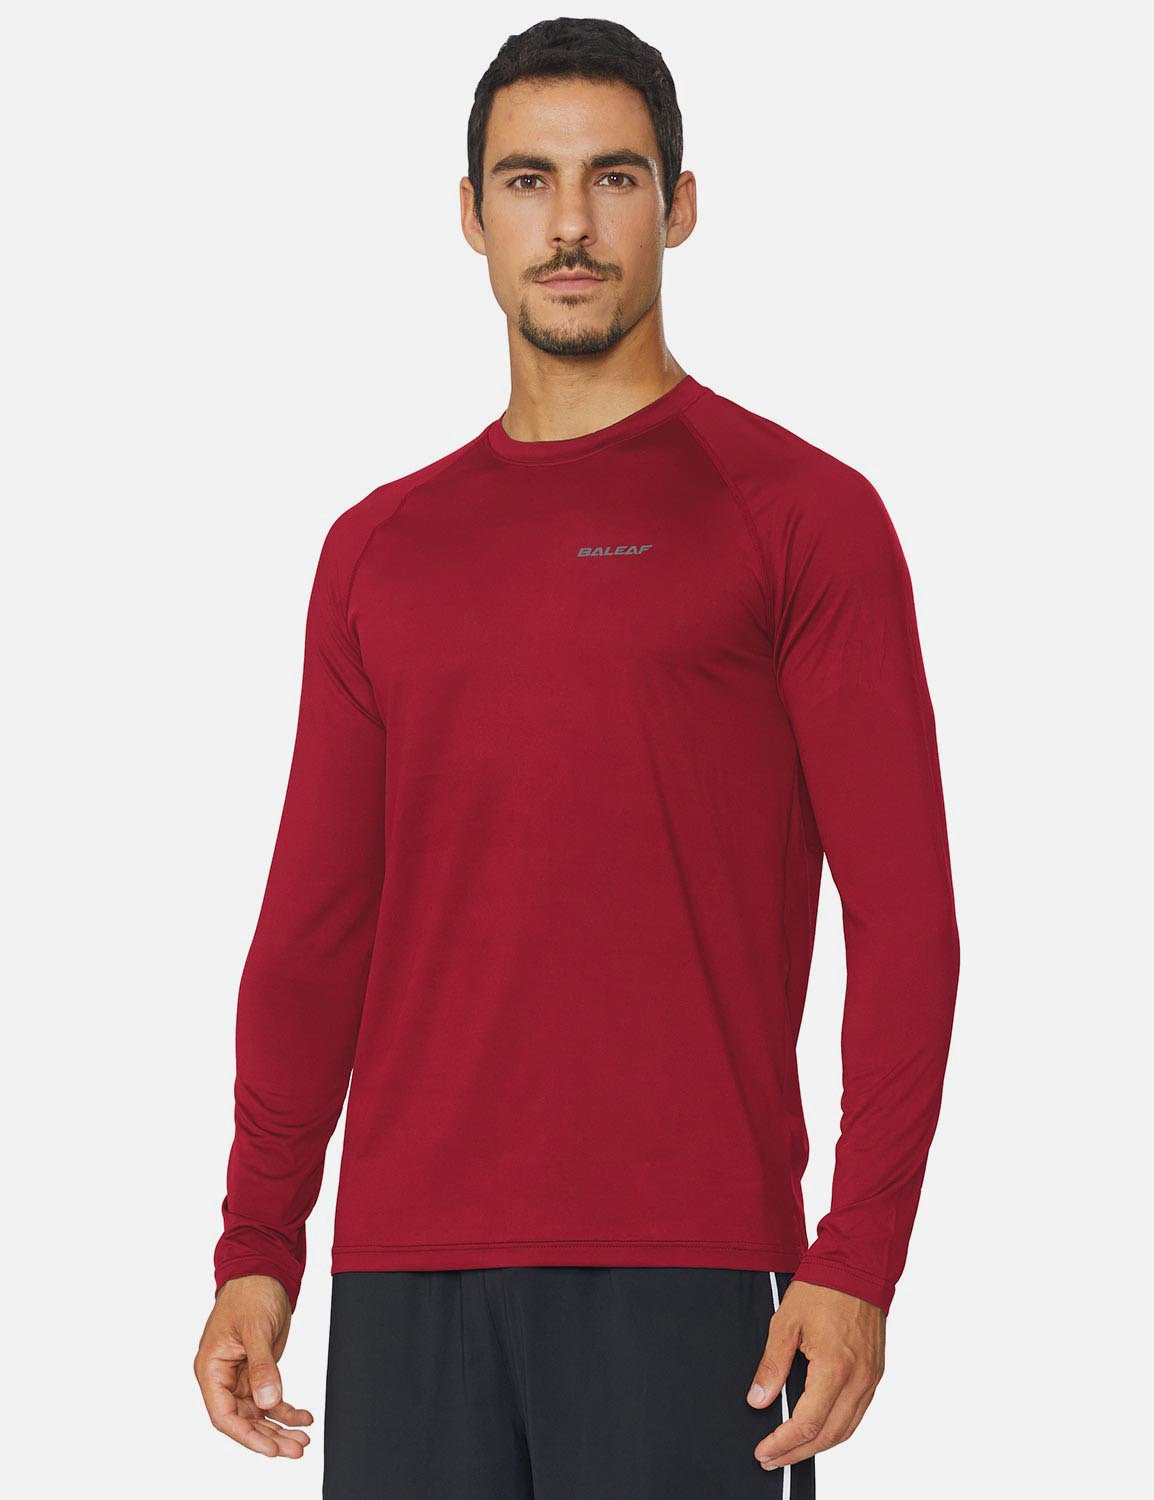 Baleaf Men's Workout Crew-Neck Slim-Cut Long Sleeved Shirt abd195 Dark Red Side